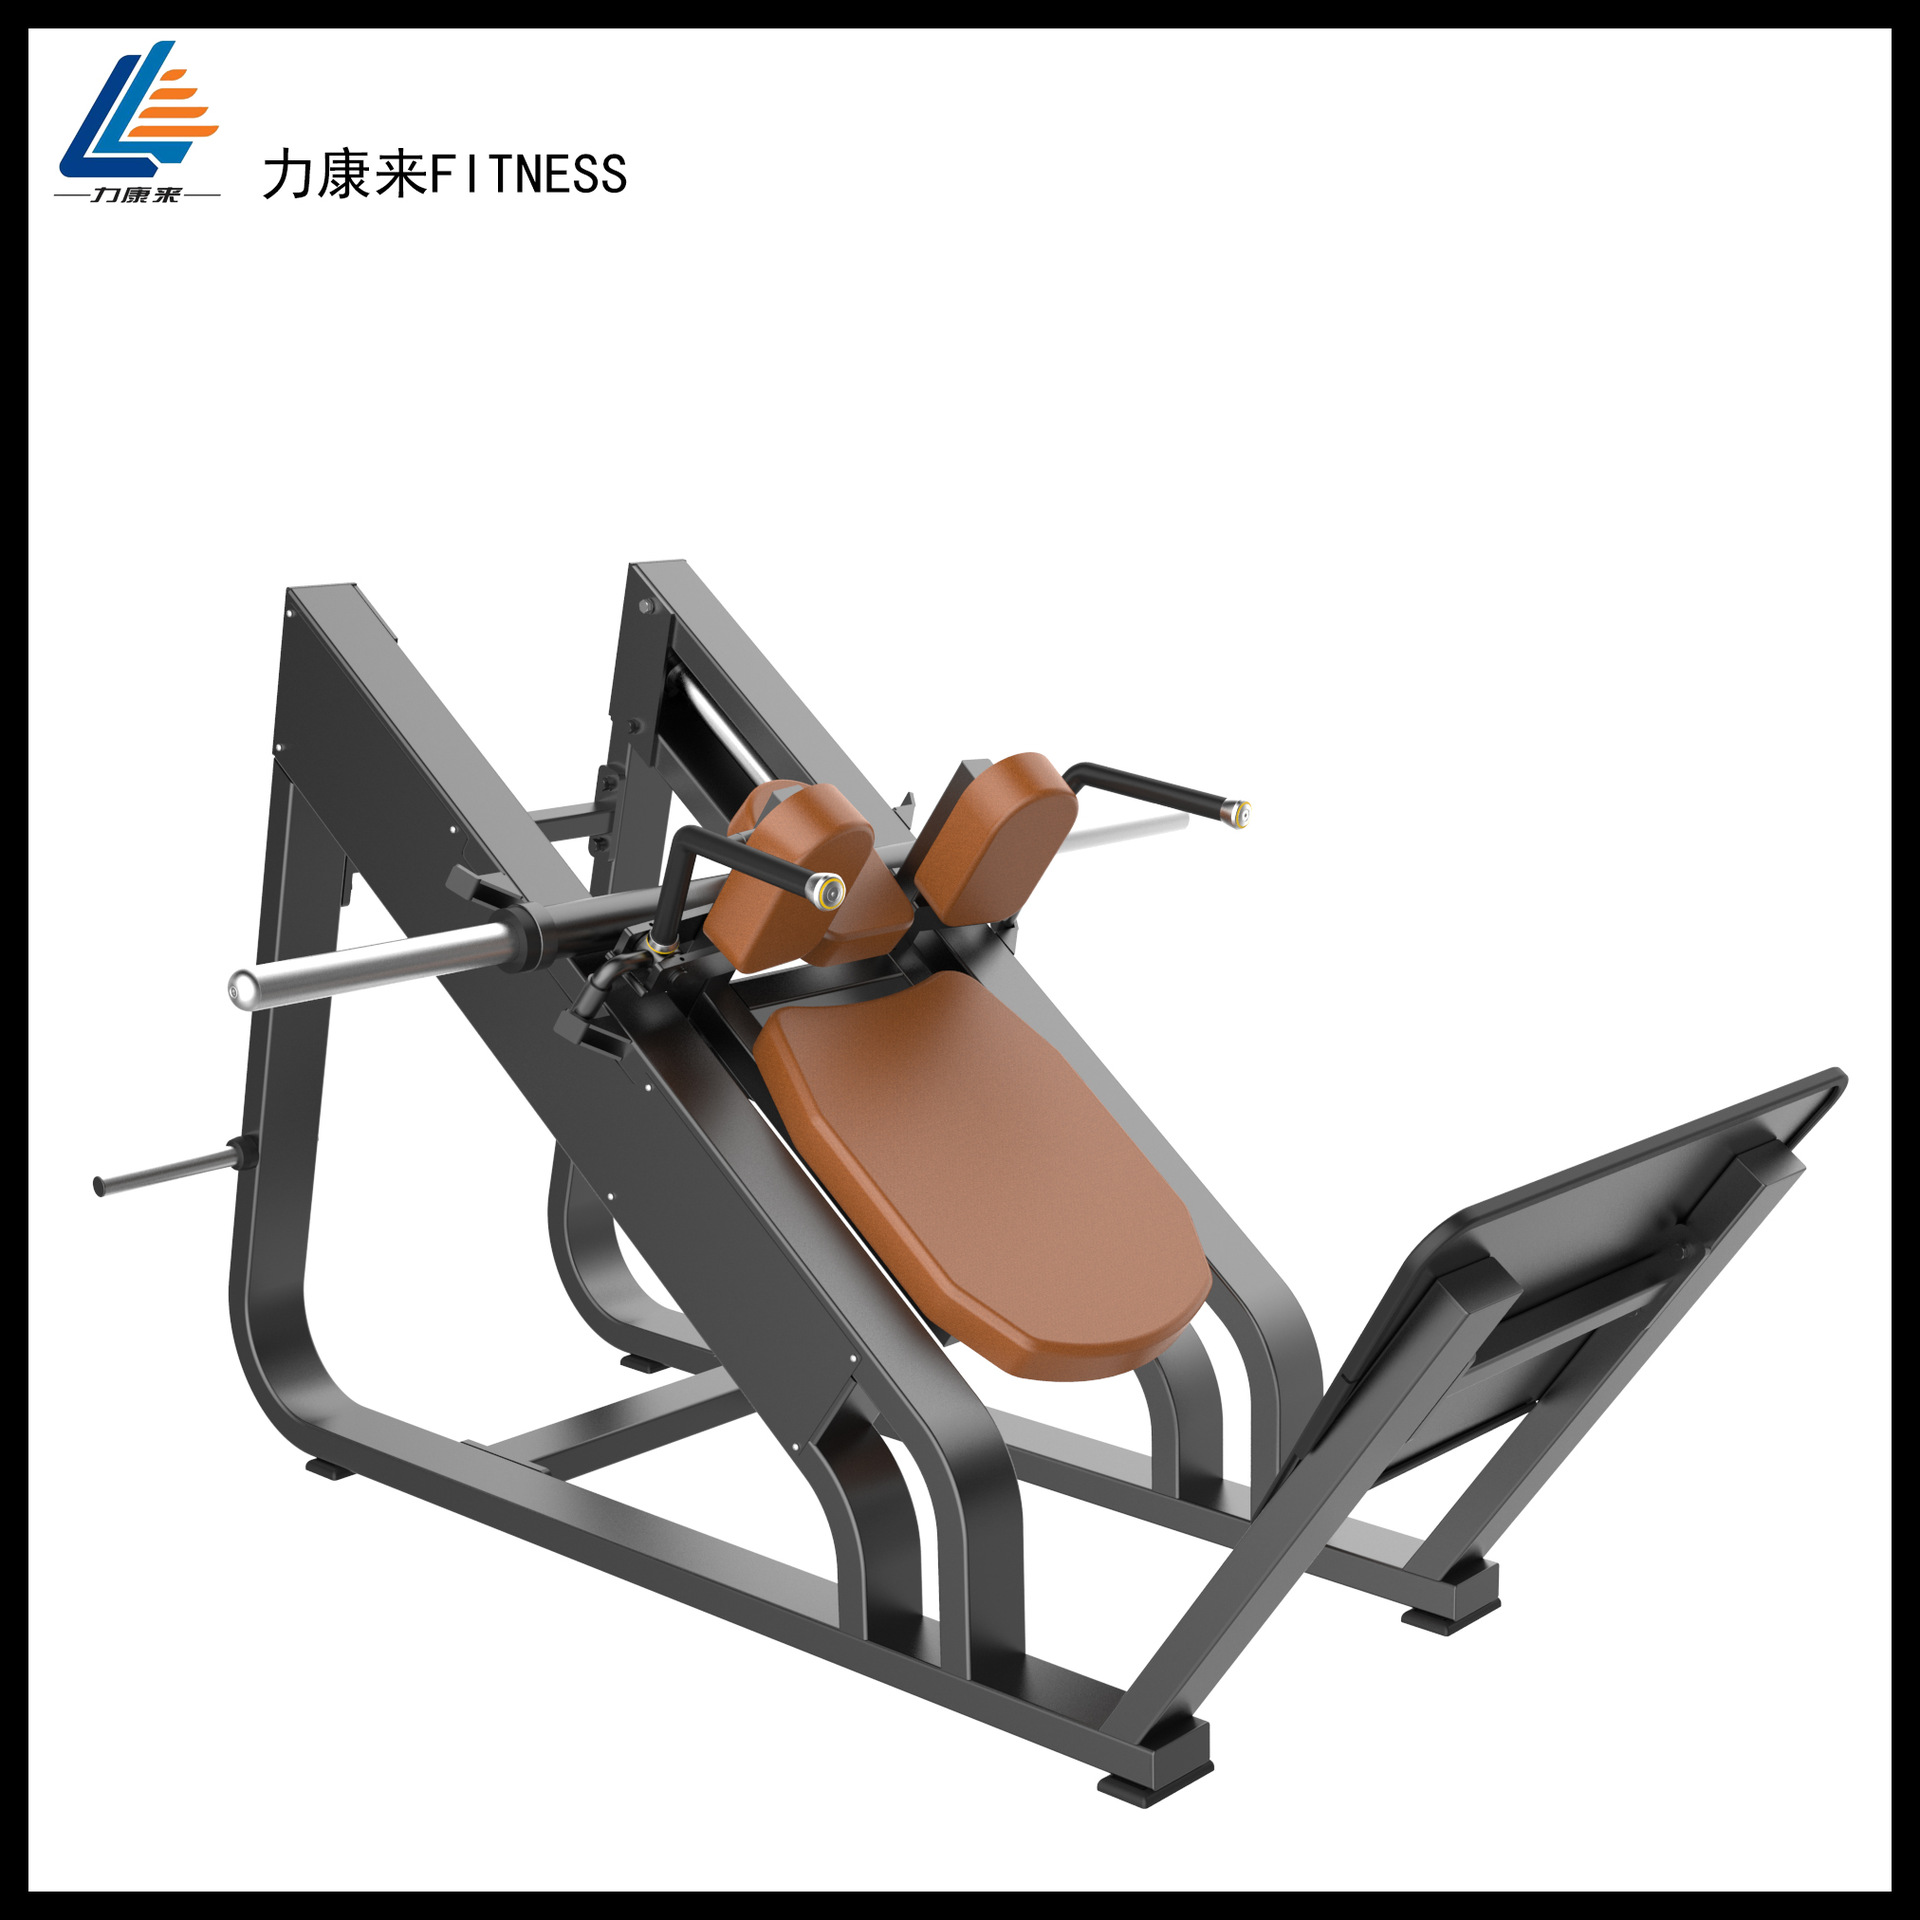 锻炼臀部肌肉健身器材 室内腿部深蹲机     名称:挂片式斜蹲机   规格